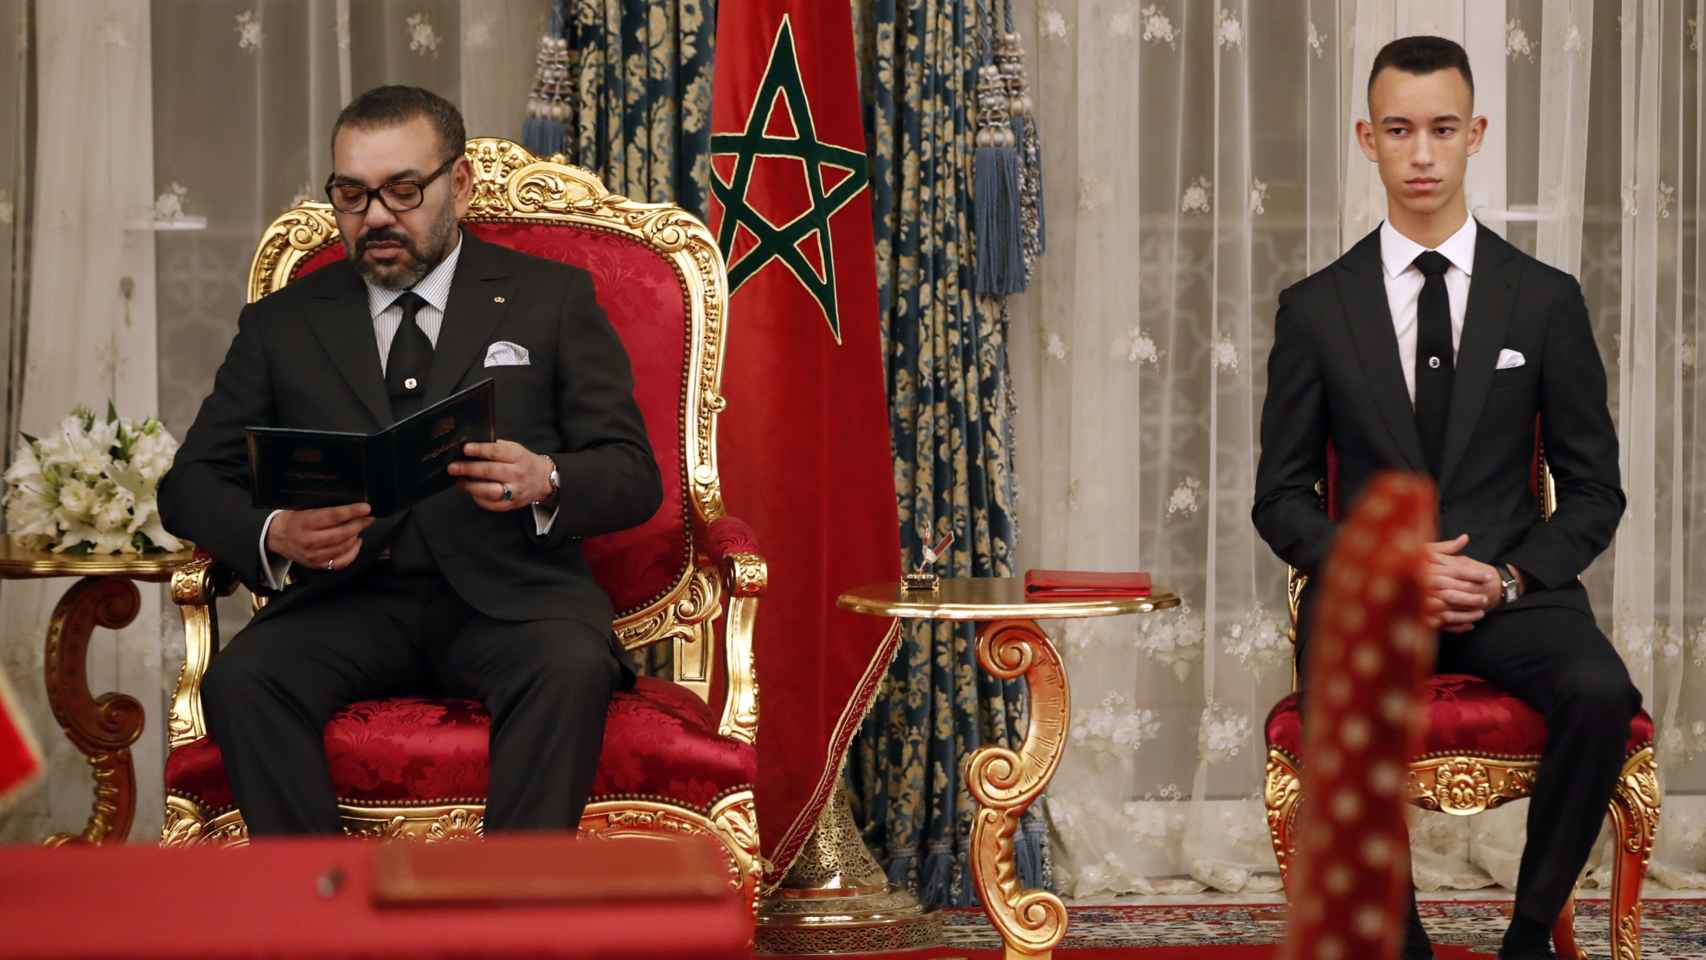 El príncipe marroquí, junto al rey Mohamed VI, ambos luciendo  relojes durante la firma del acuerdo bilateral entre España y Marruecos, en febrero de 2019.